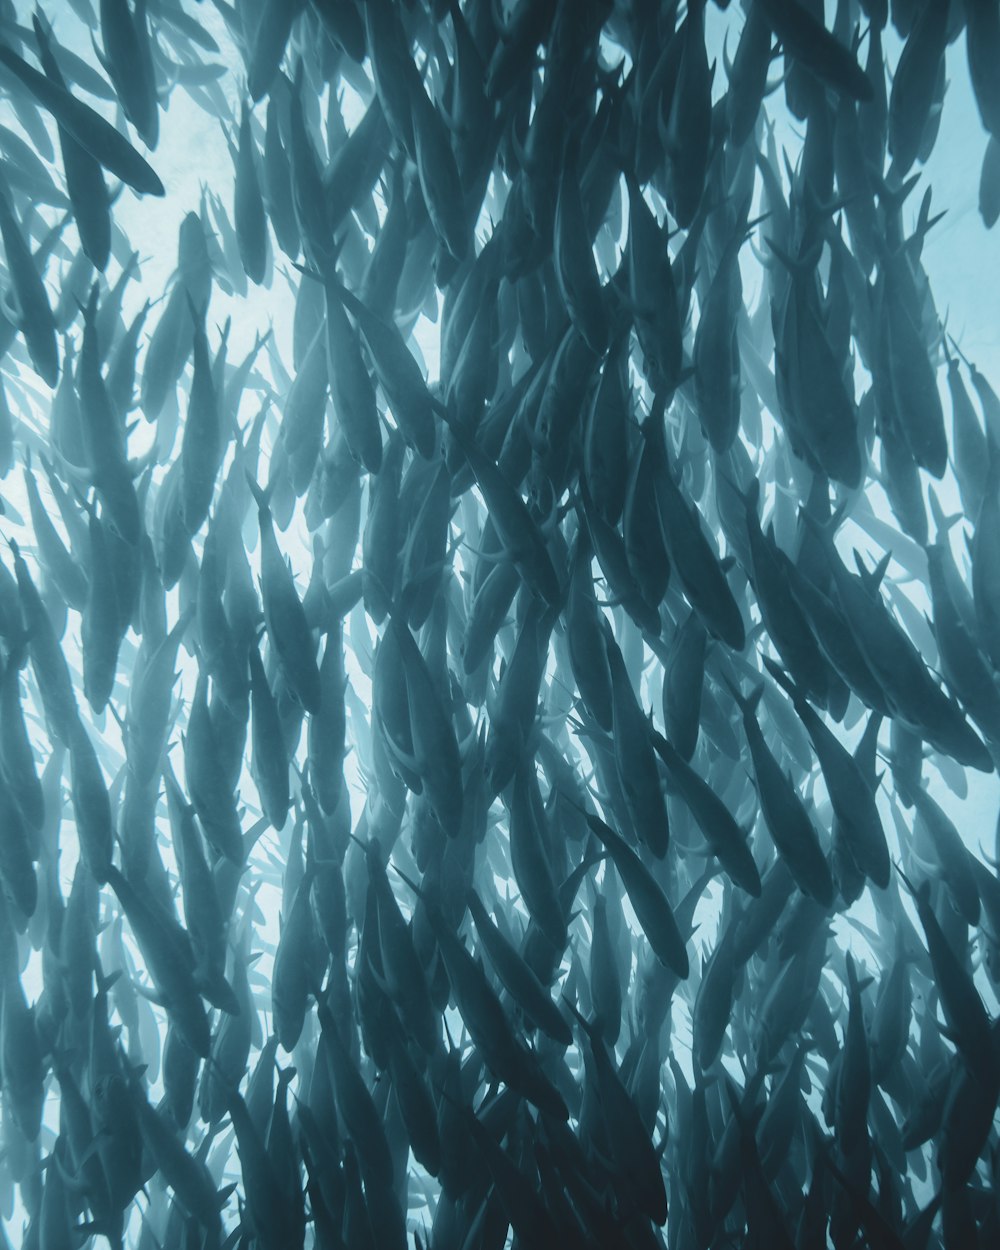 Un gran grupo de peces nadando en un cuerpo de agua